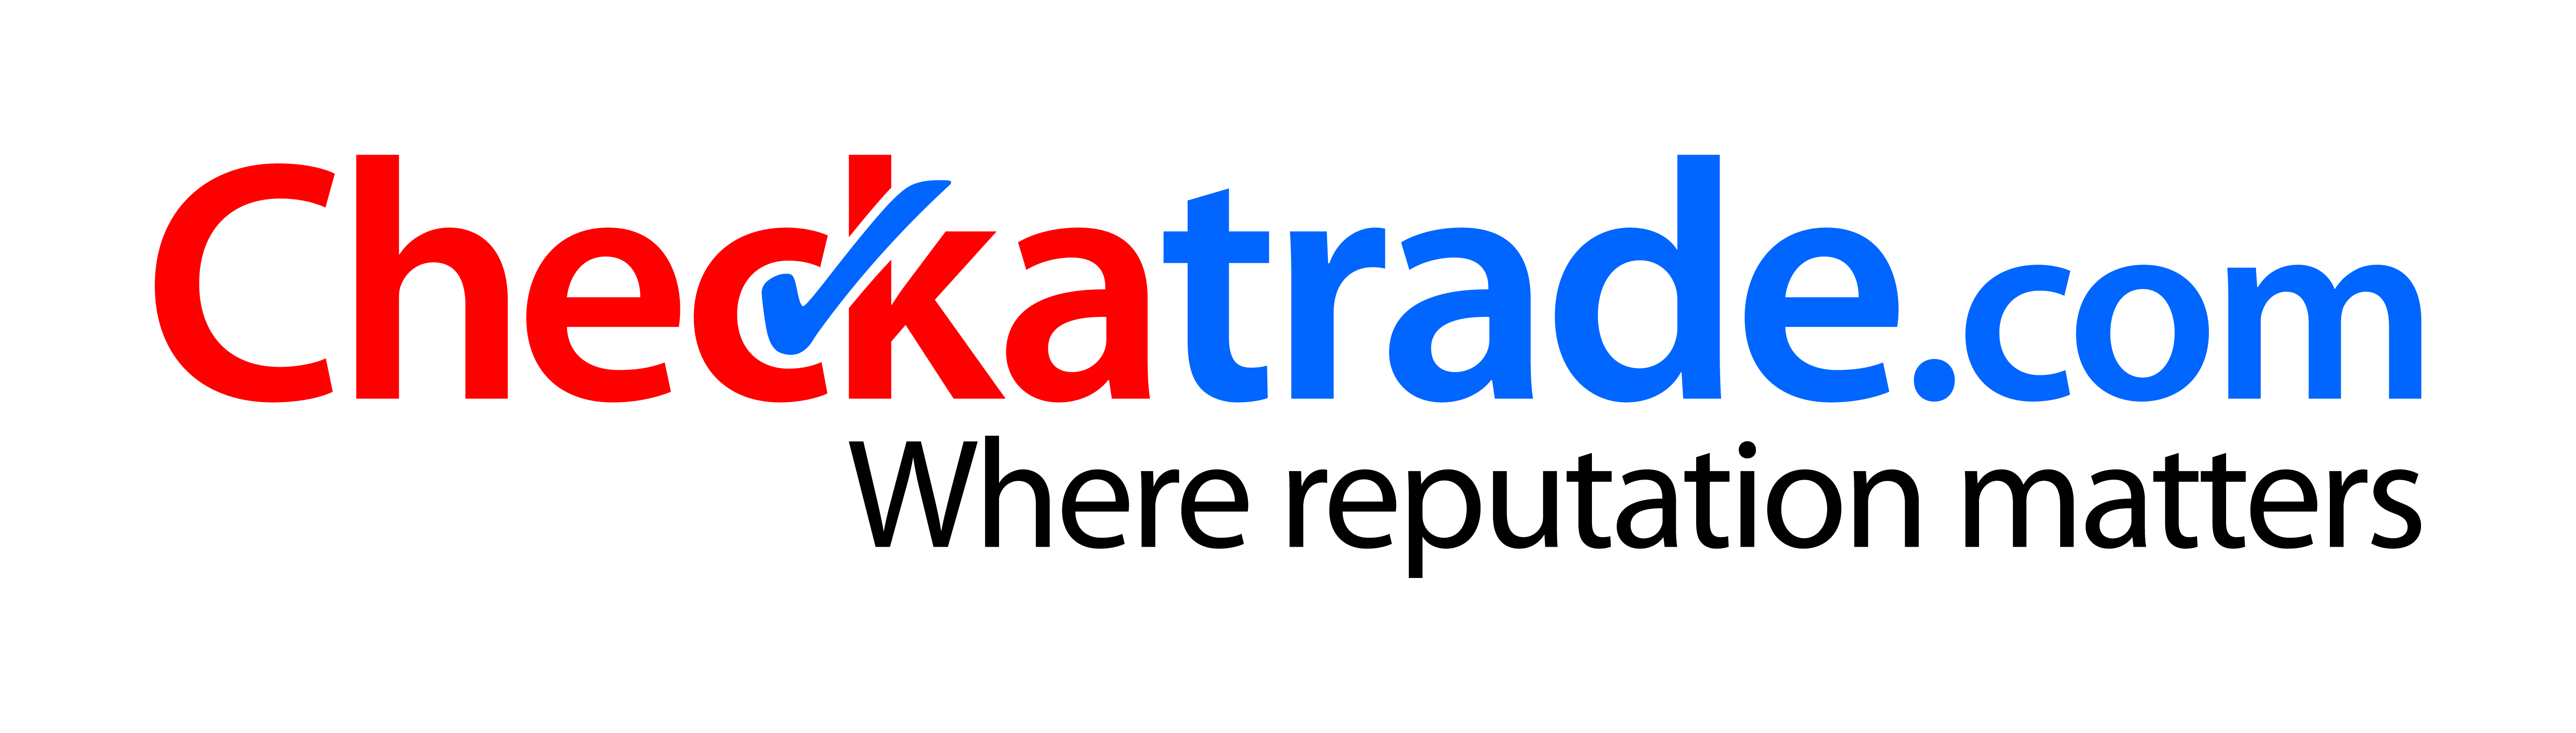 Checkertrade approved logo